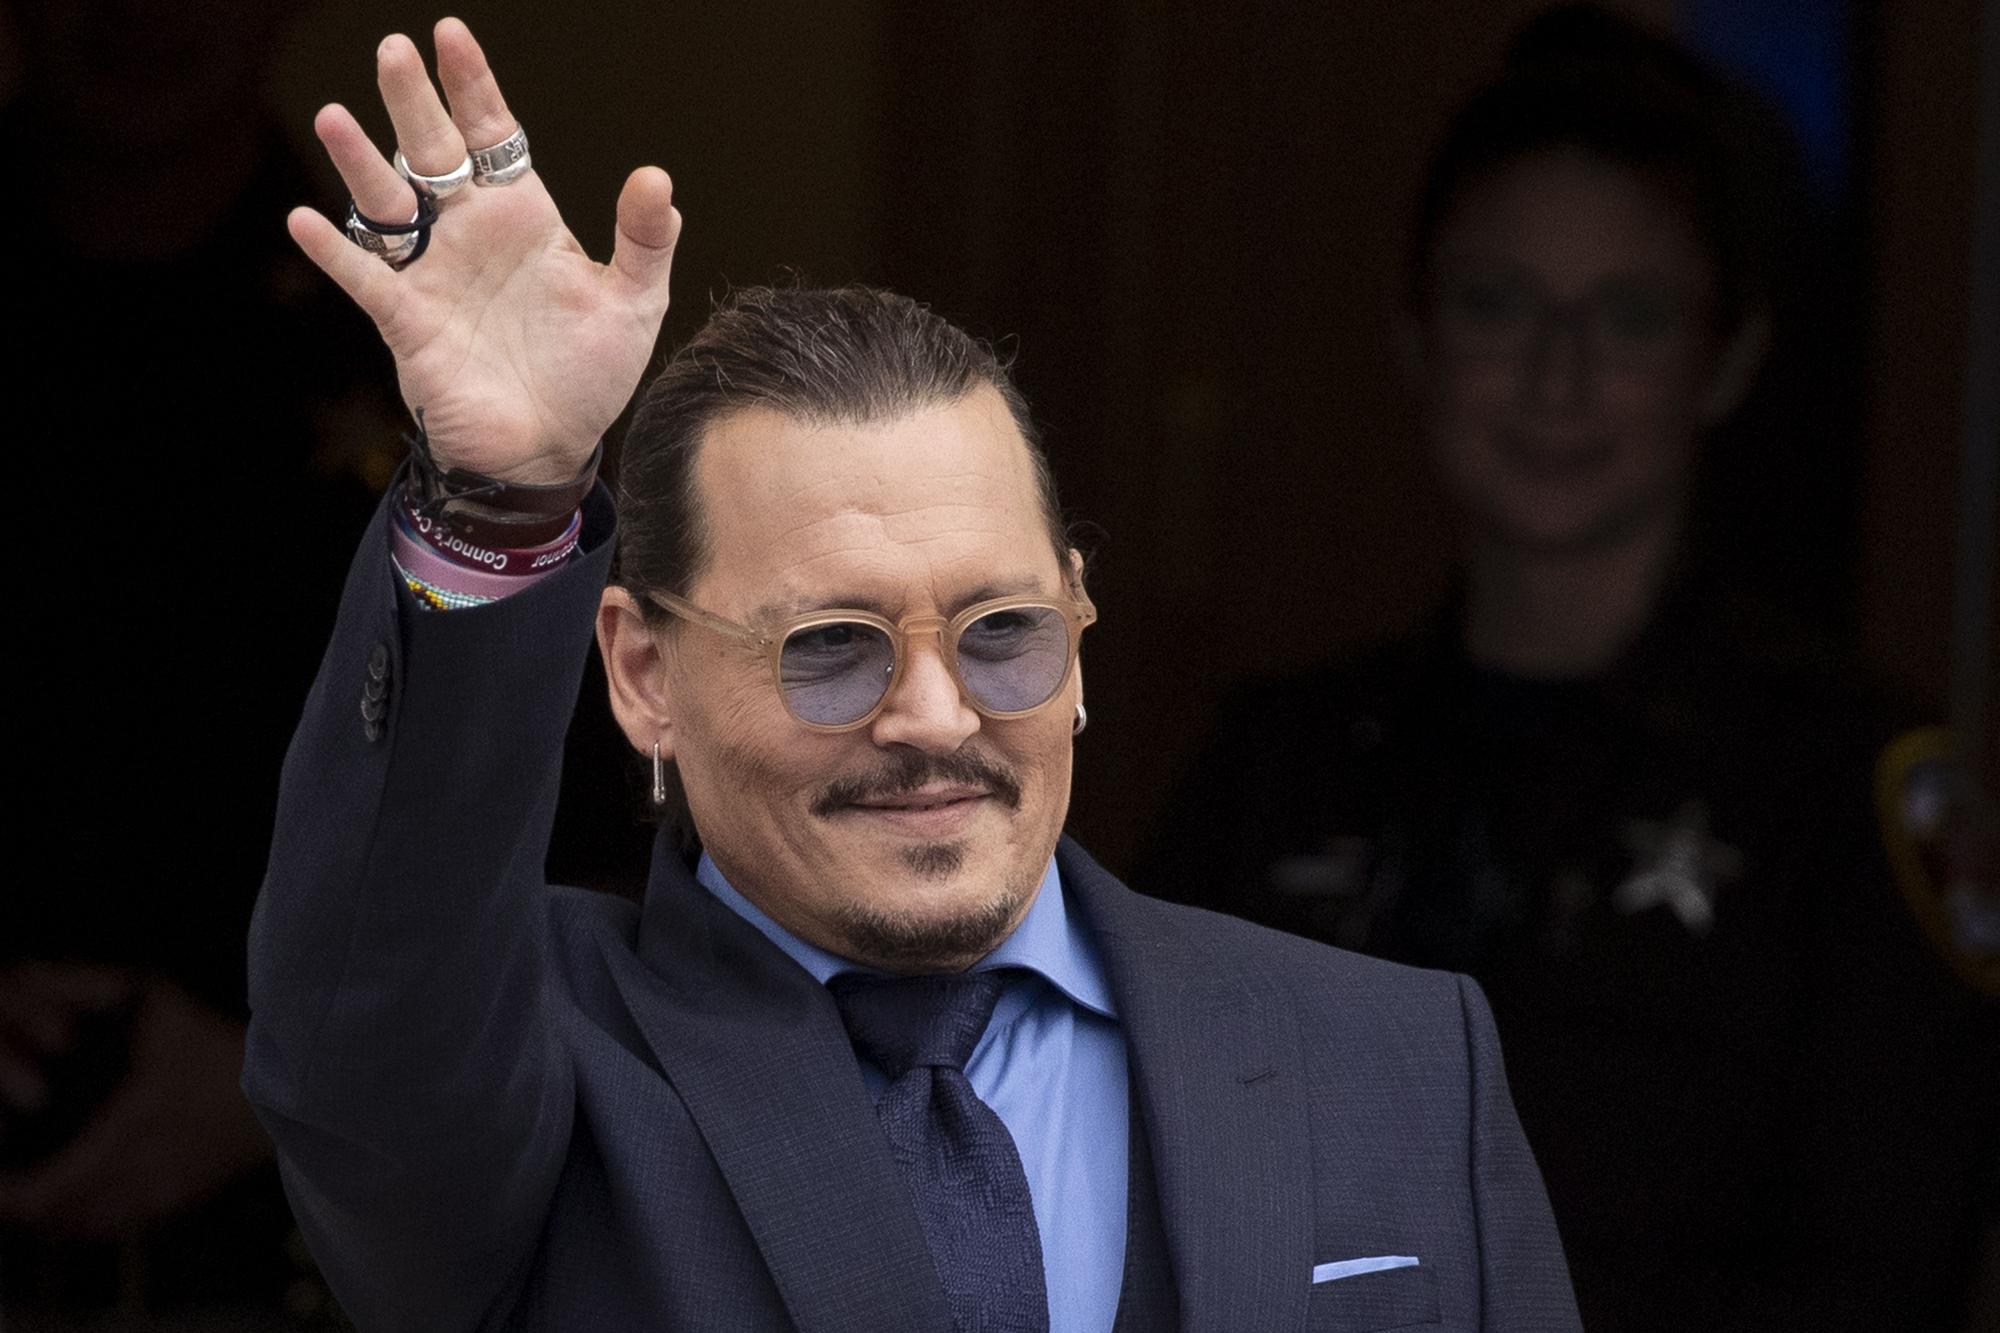 Johnny Depp, como Luis XV, abre hoy la 76 edición del Festival de Cannes